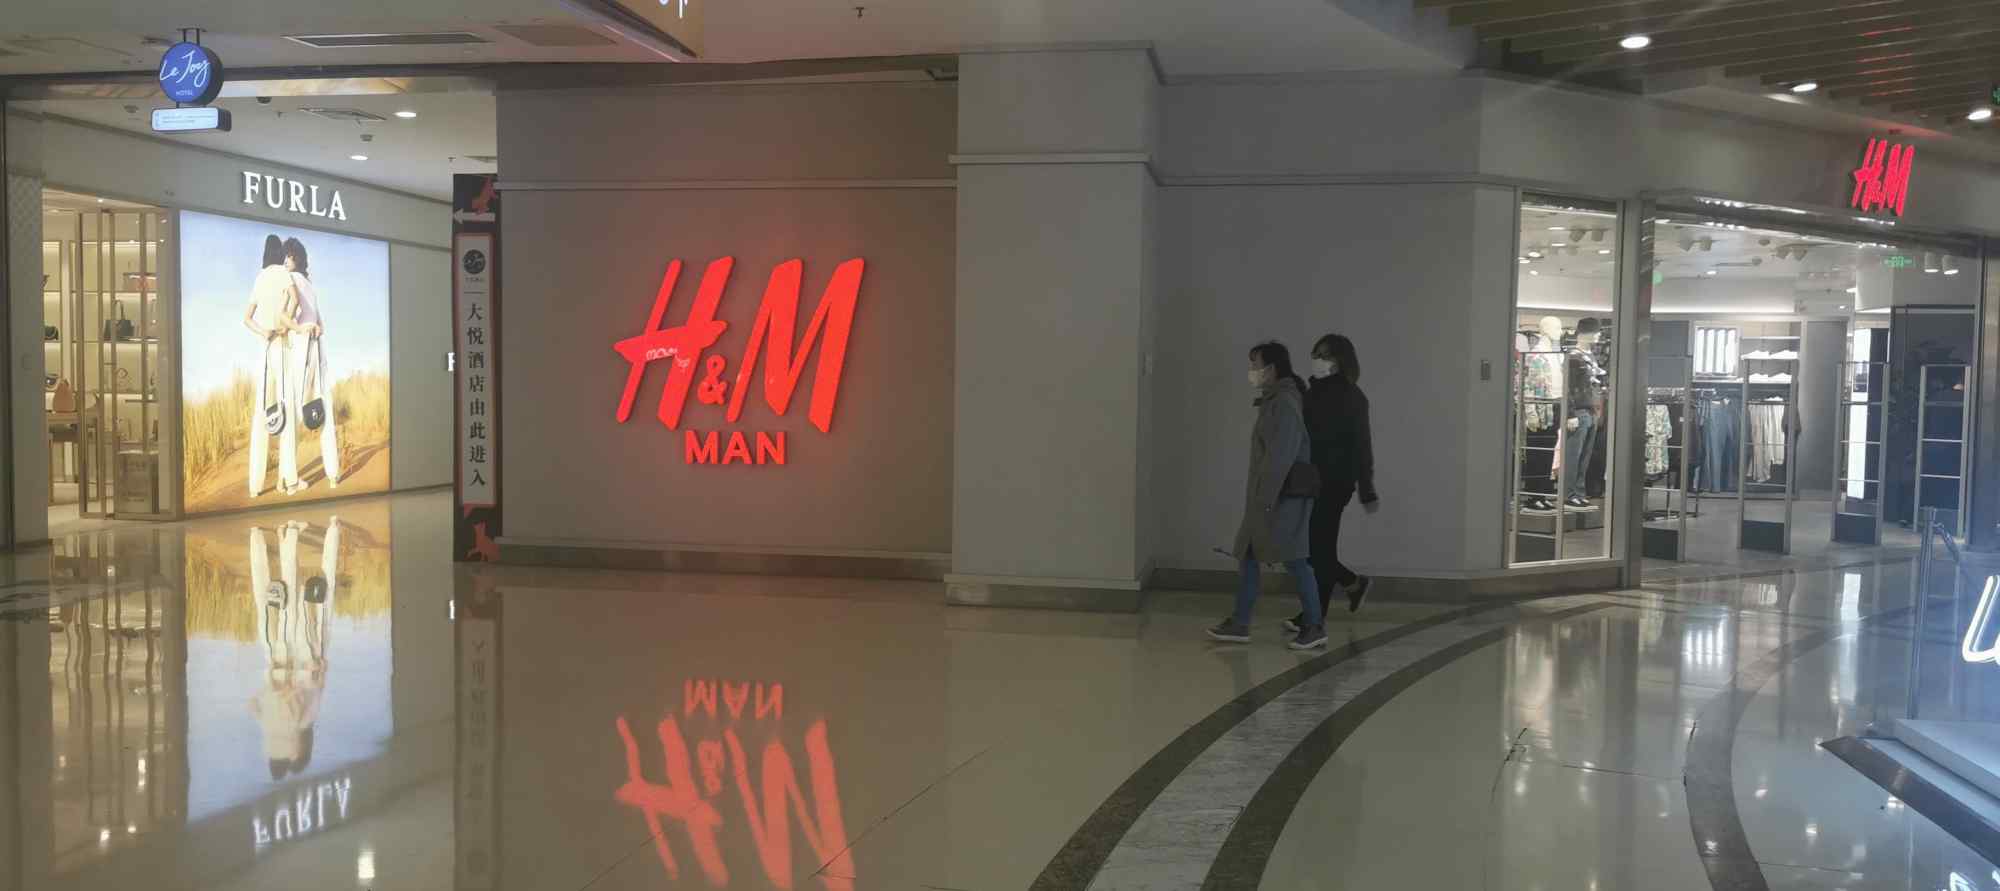 凉凉！北京热门H&M实体店格外冷清 阿迪达斯耐克等店人也不多